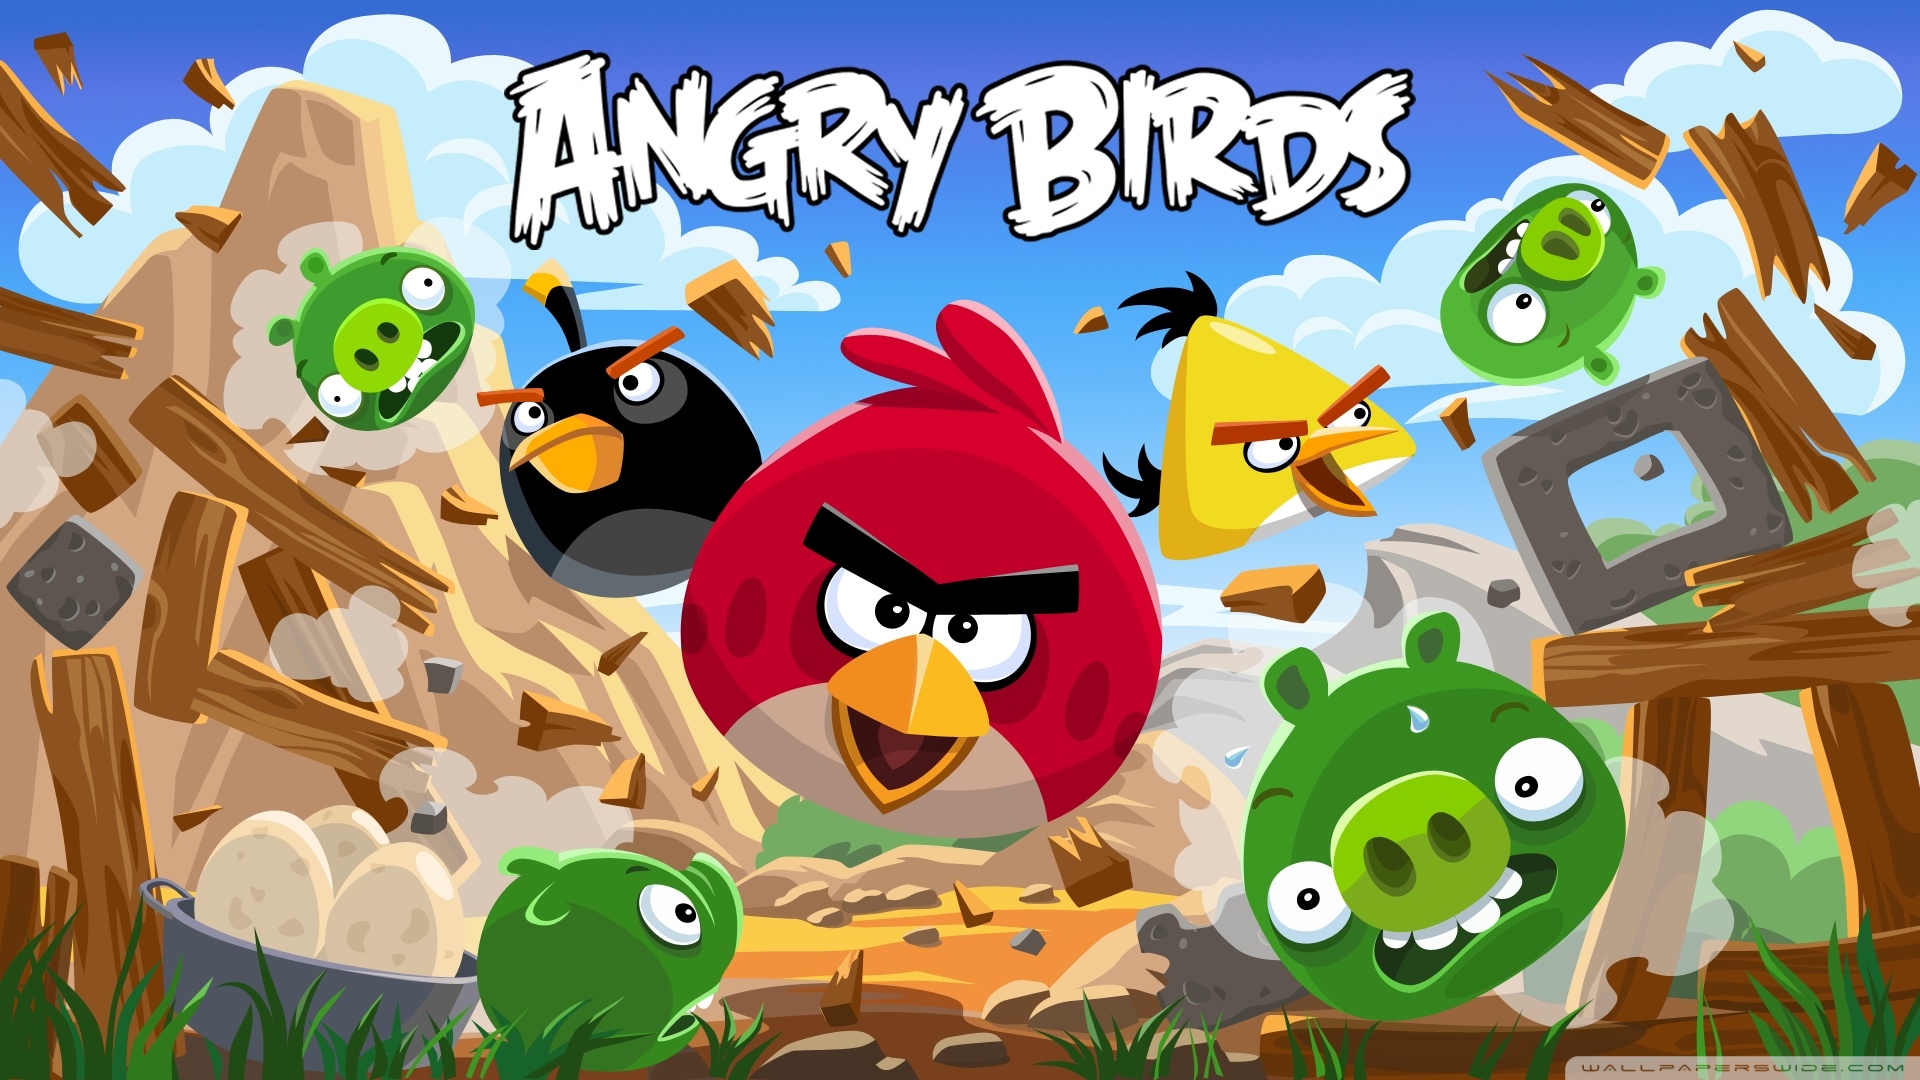 Angry Birds New Version HD desktop wallpaper : Widescreen : High ...